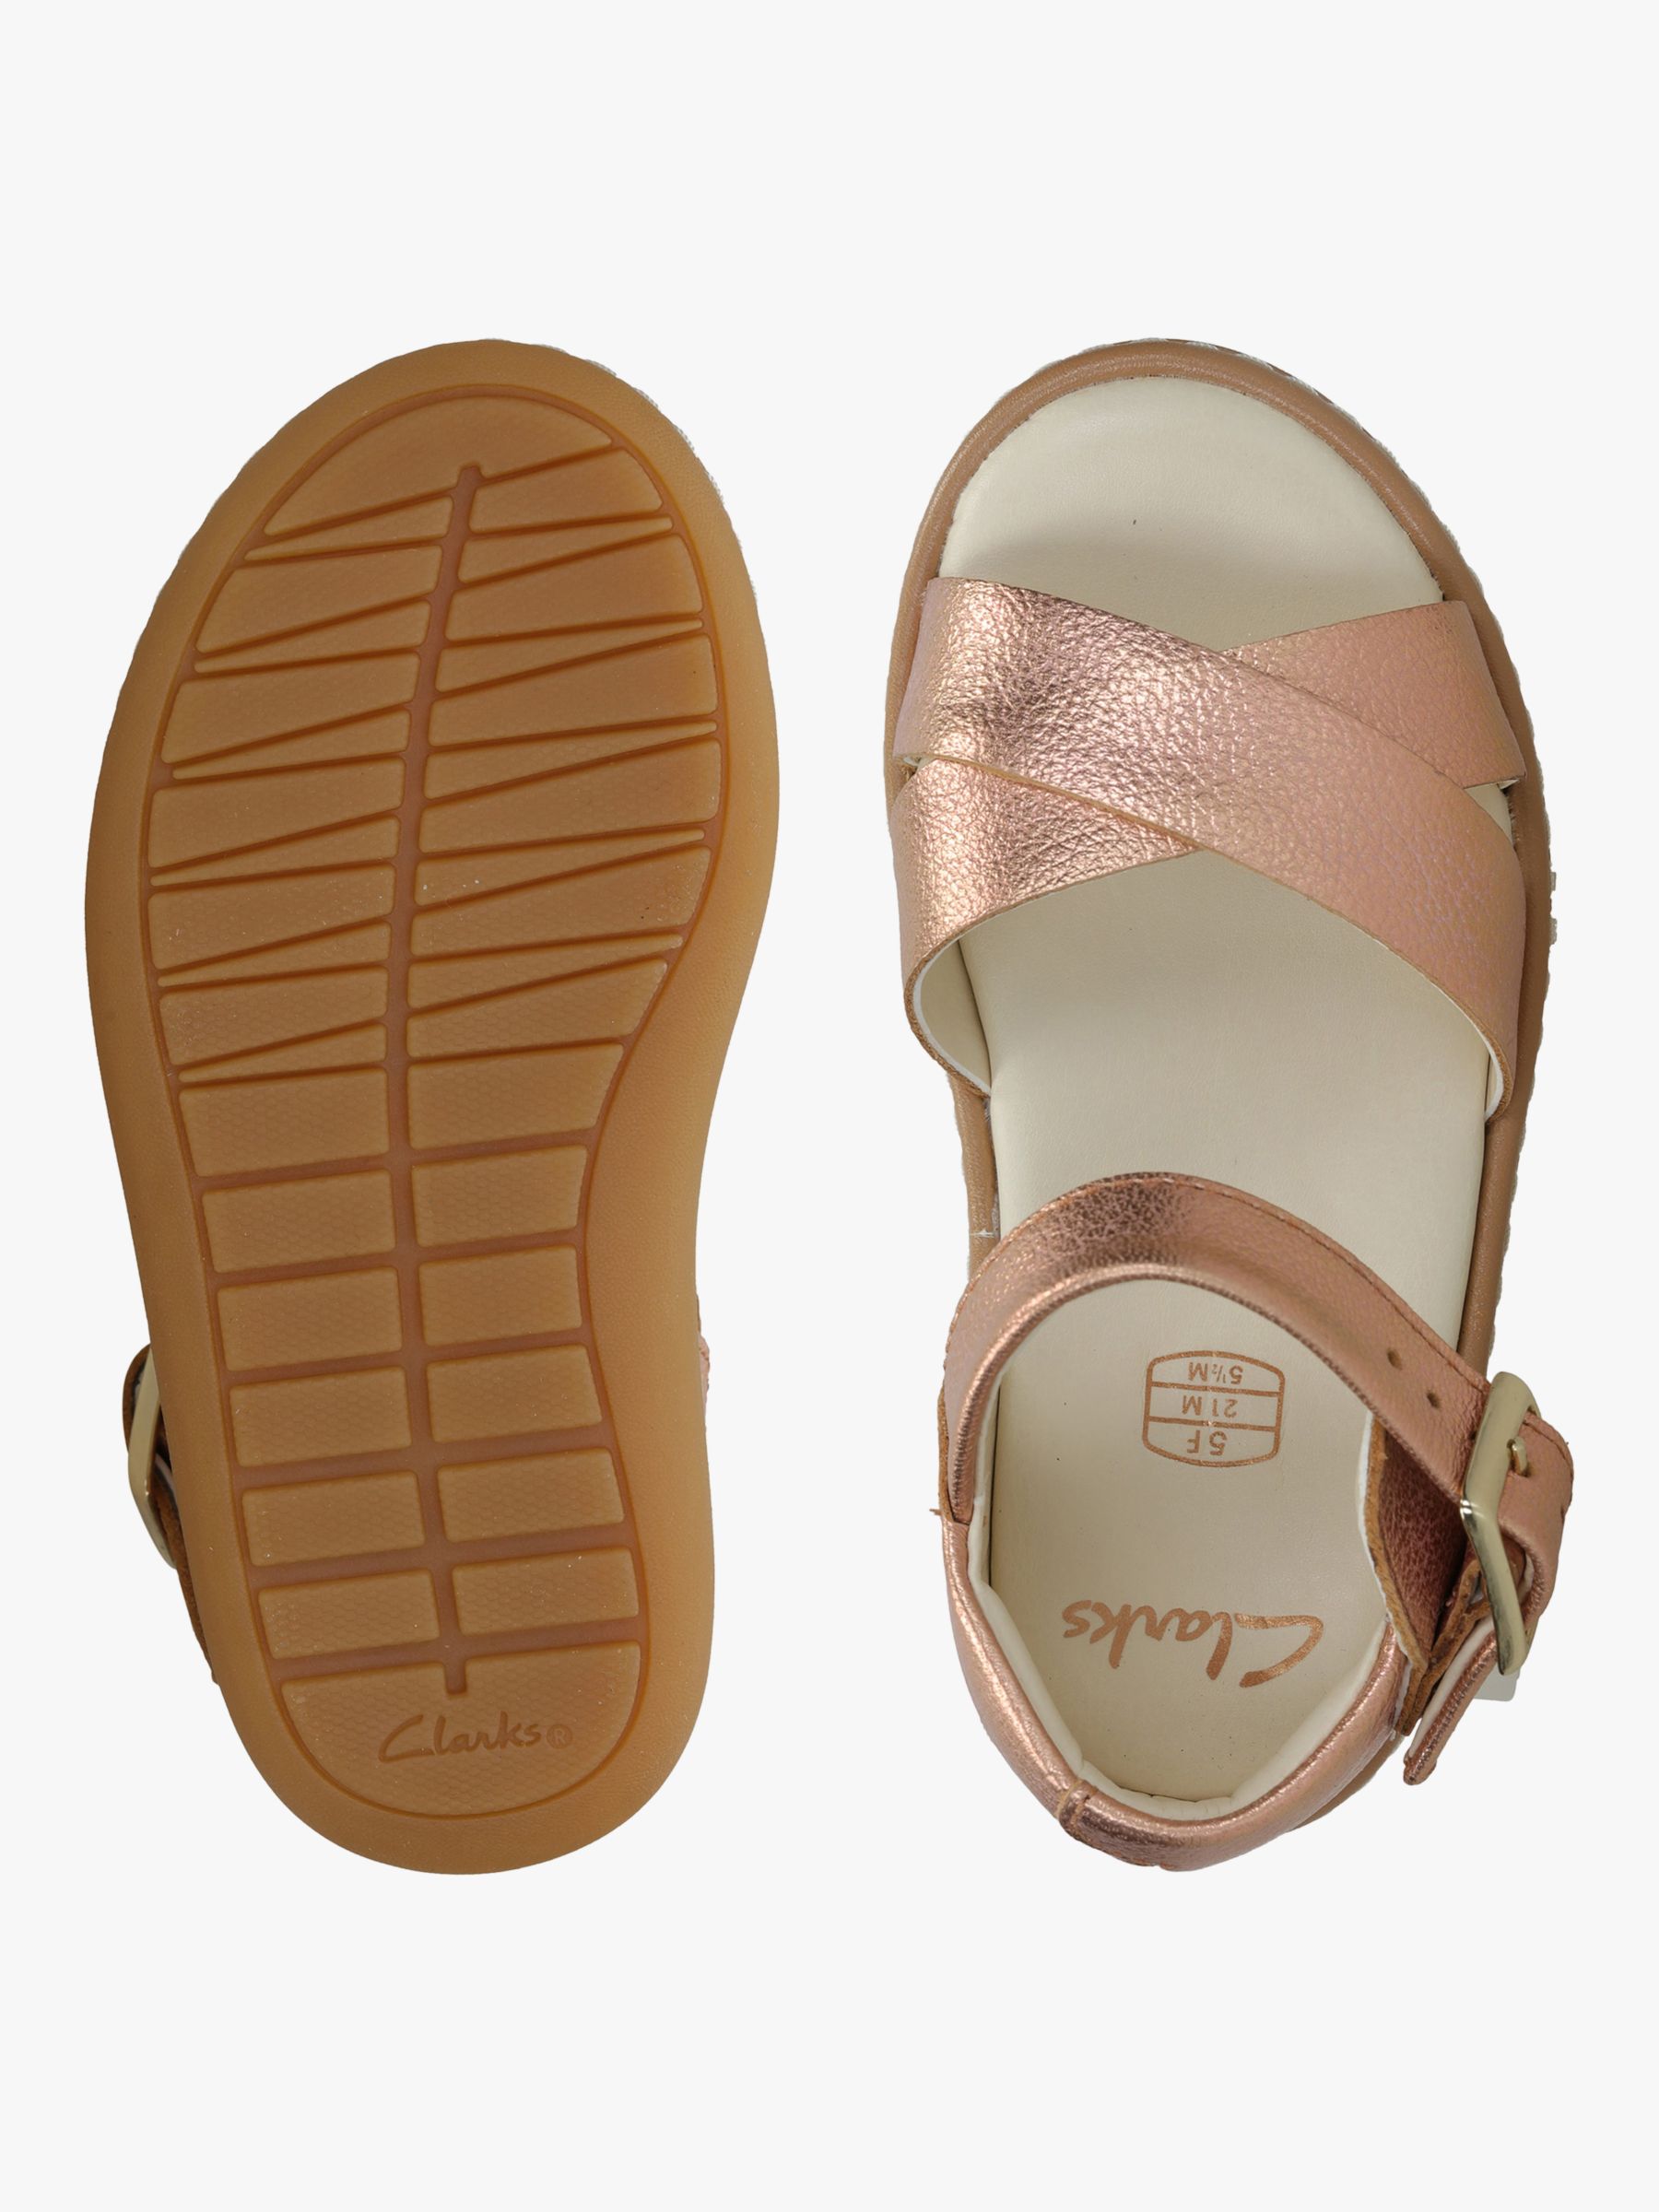 clarks bronze sandals